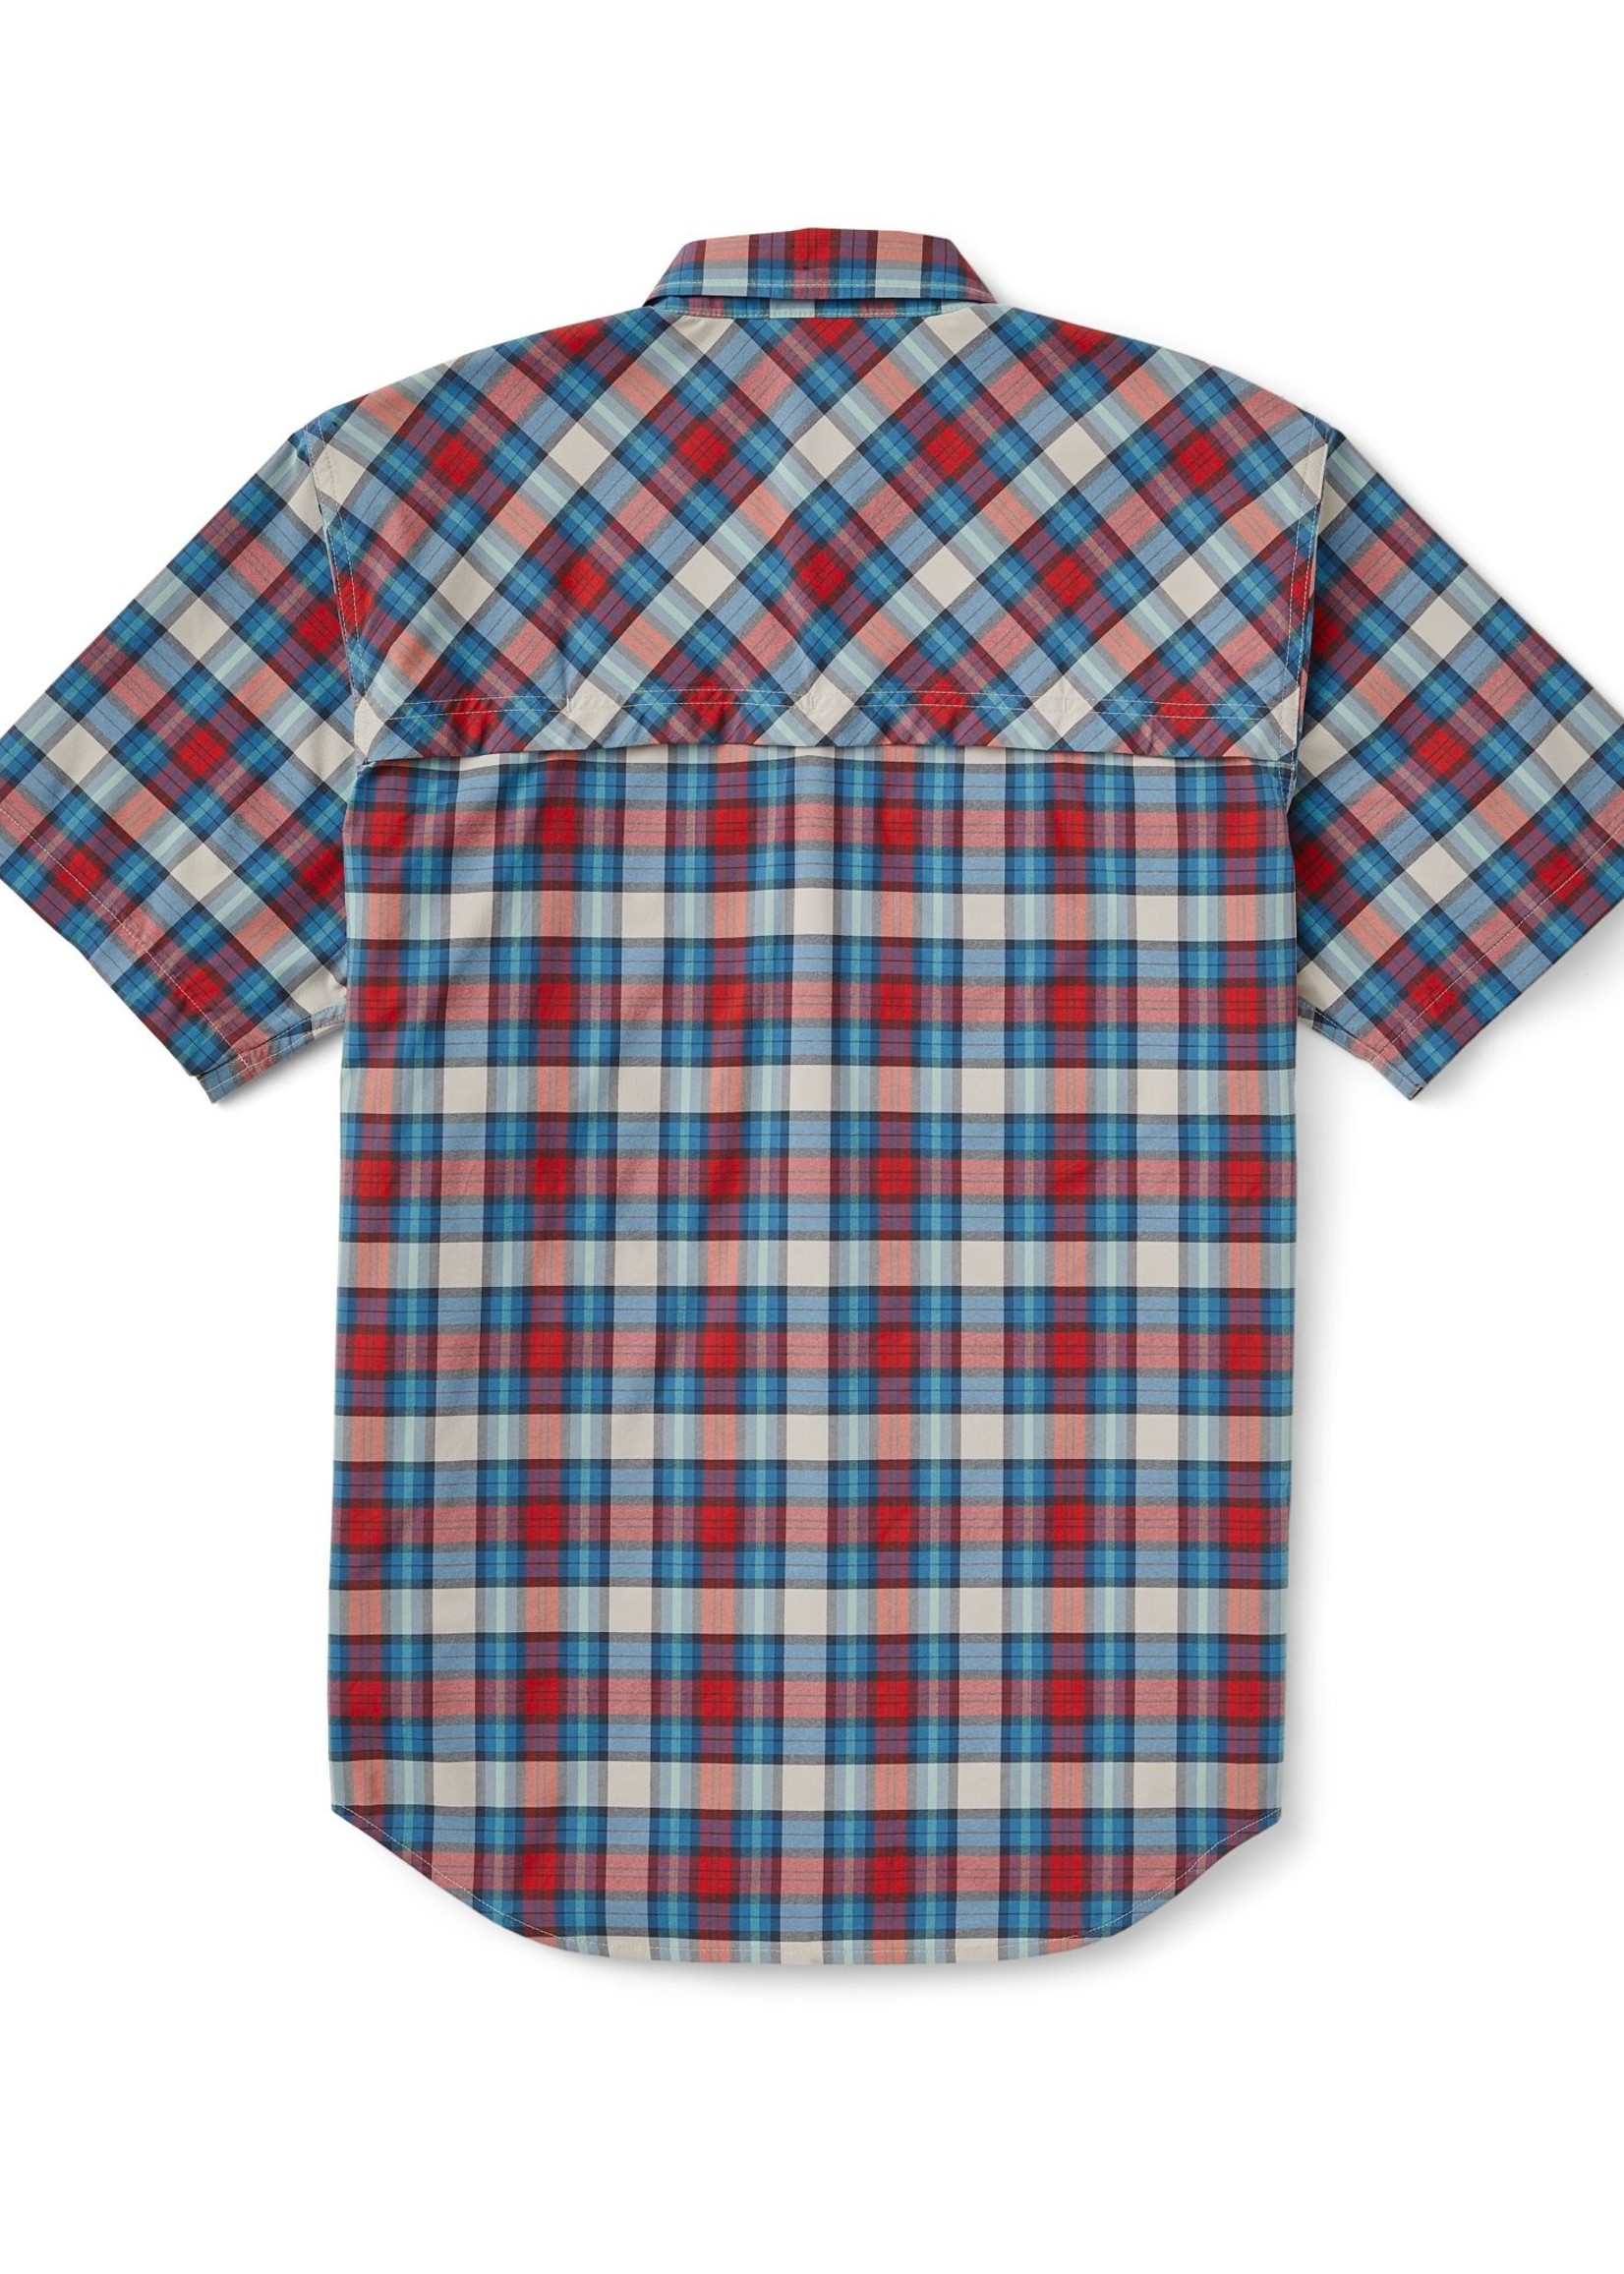 Filson Twin Lakes Short Sleeve Sport Shirt: BluecMrdBl